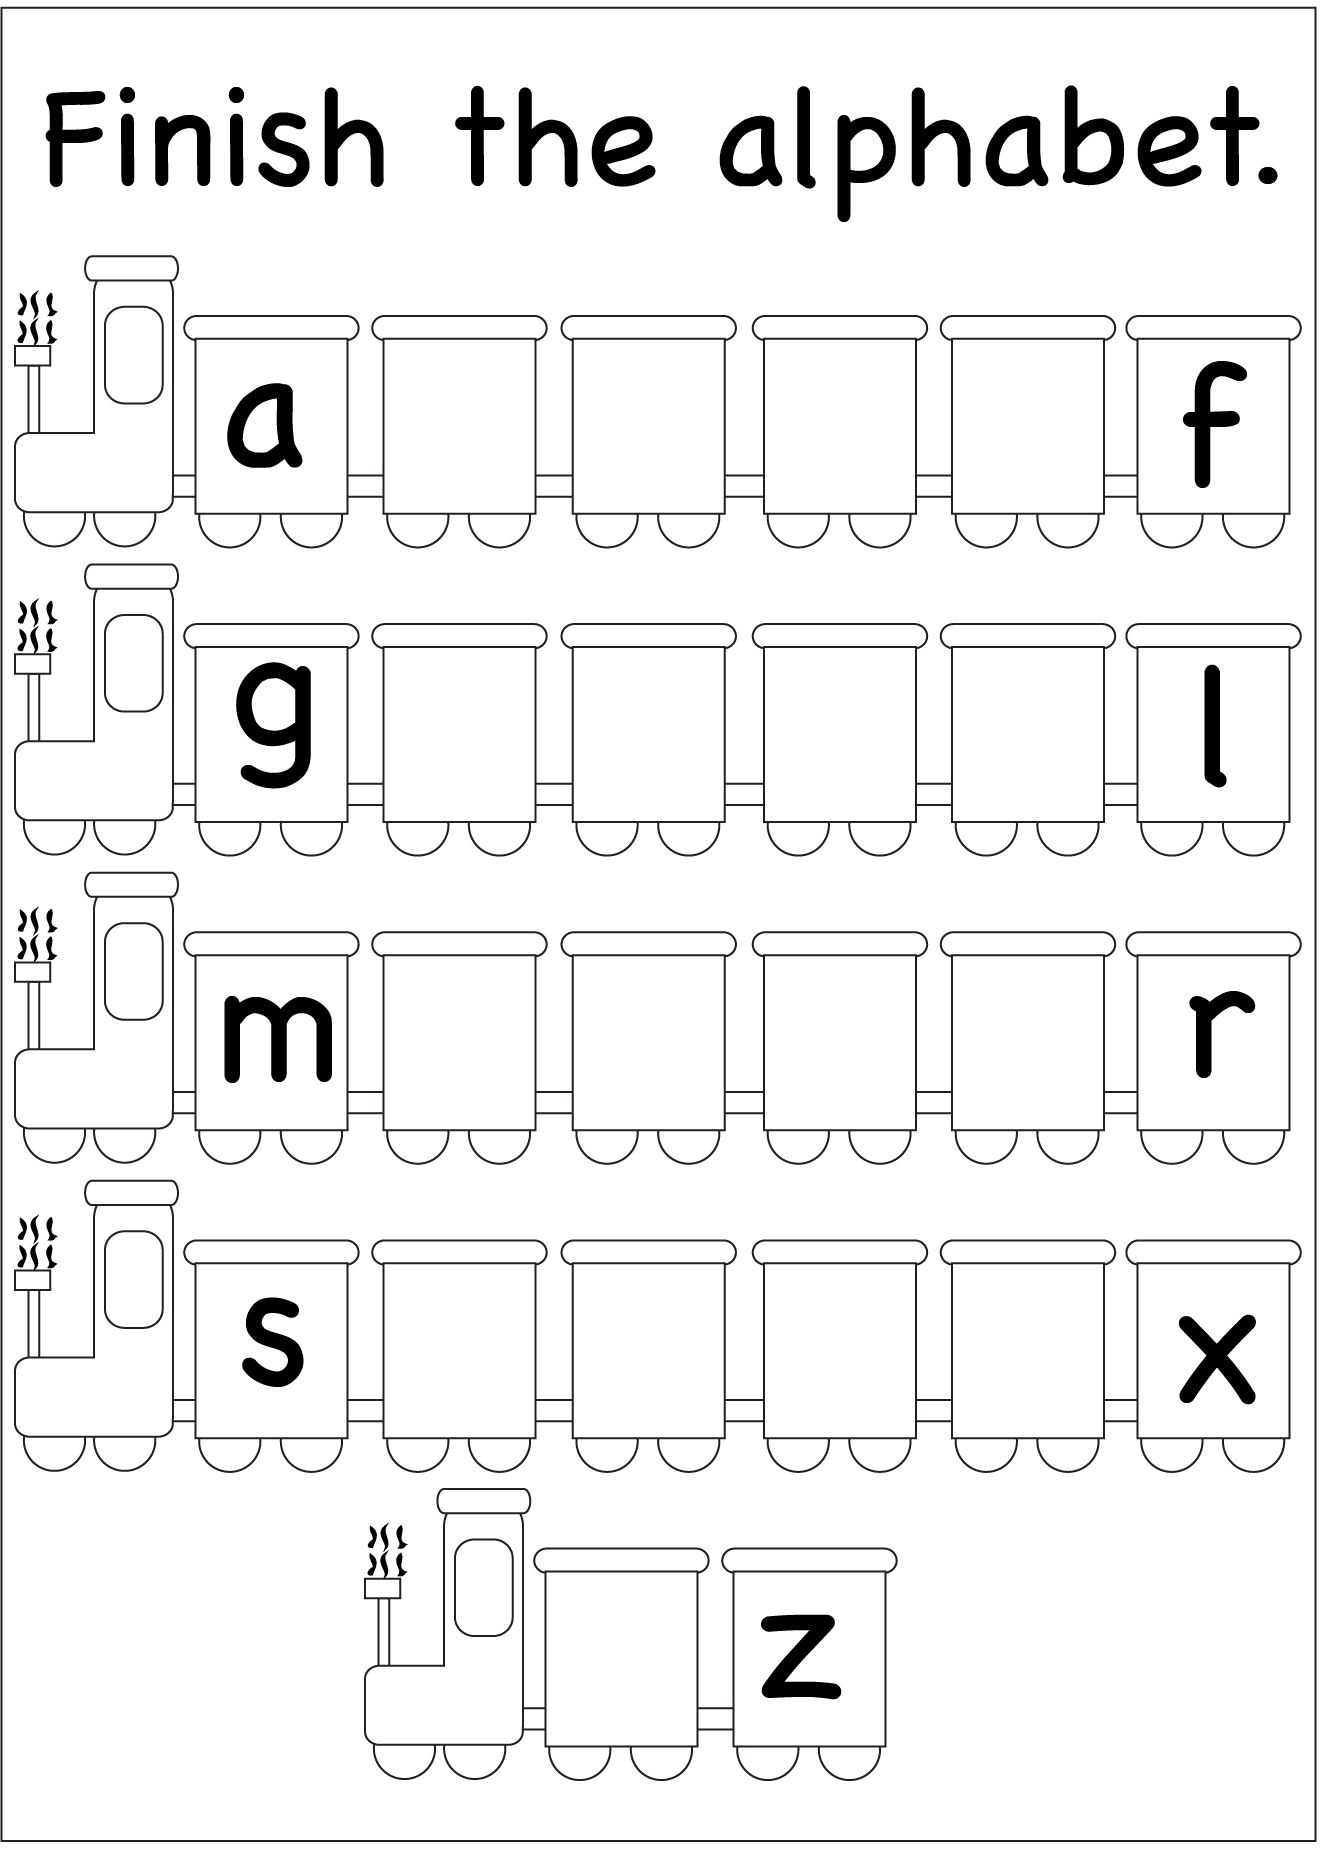 the-letter-i-worksheets-for-preschool-kidz-worksheets-preschool-find-letters-worksheet8